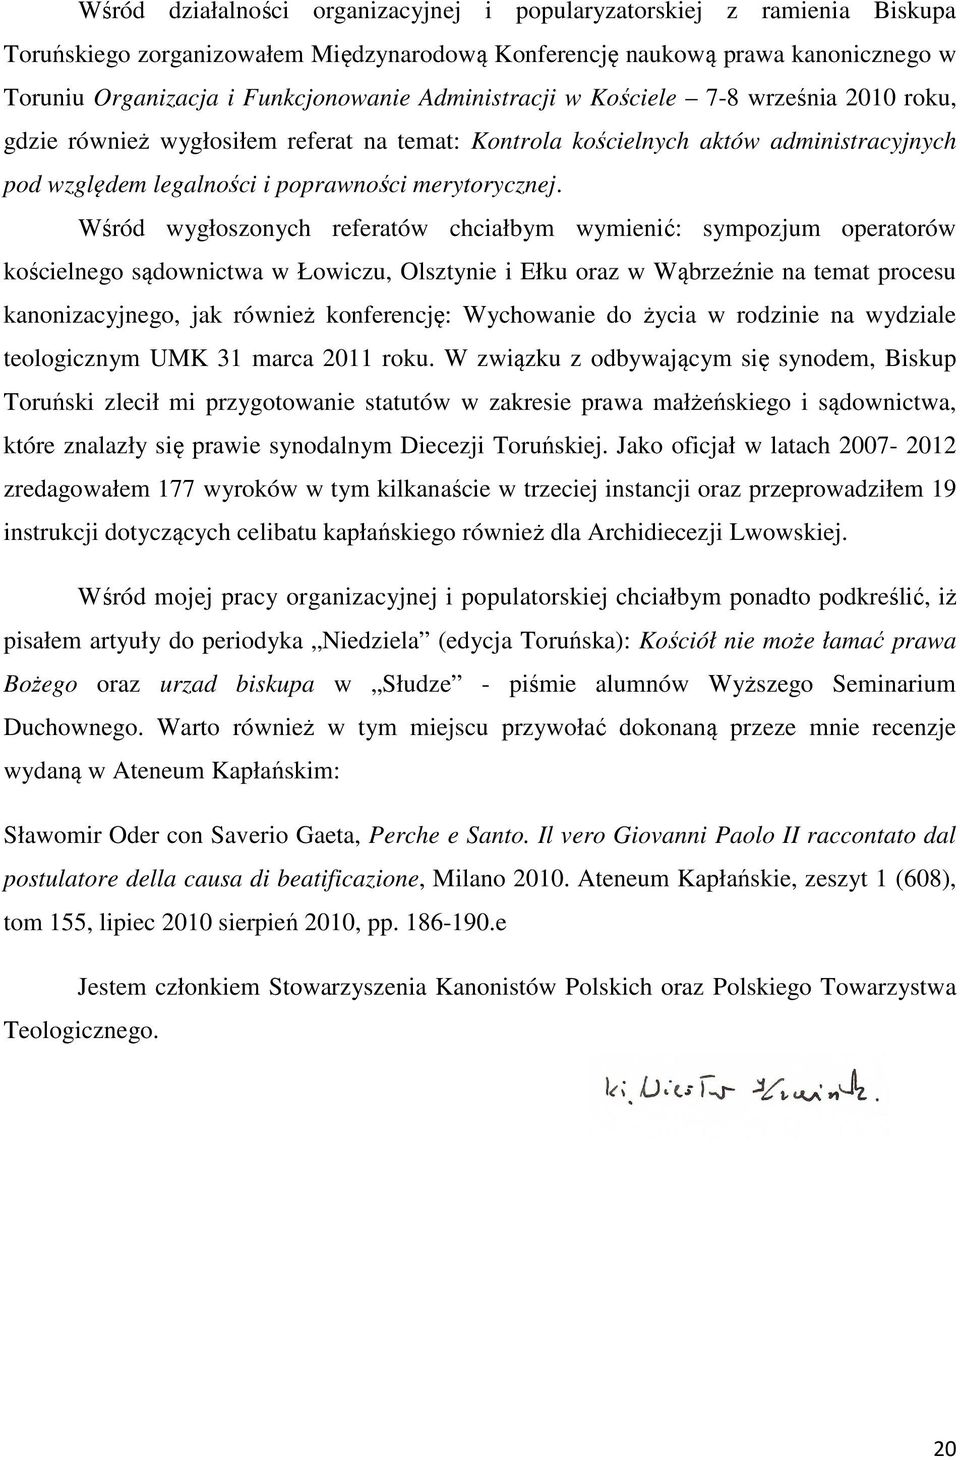 Wśród wygłoszonych referatów chciałbym wymienić: sympozjum operatorów kościelnego sądownictwa w Łowiczu, Olsztynie i Ełku oraz w Wąbrzeźnie na temat procesu kanonizacyjnego, jak również konferencję: